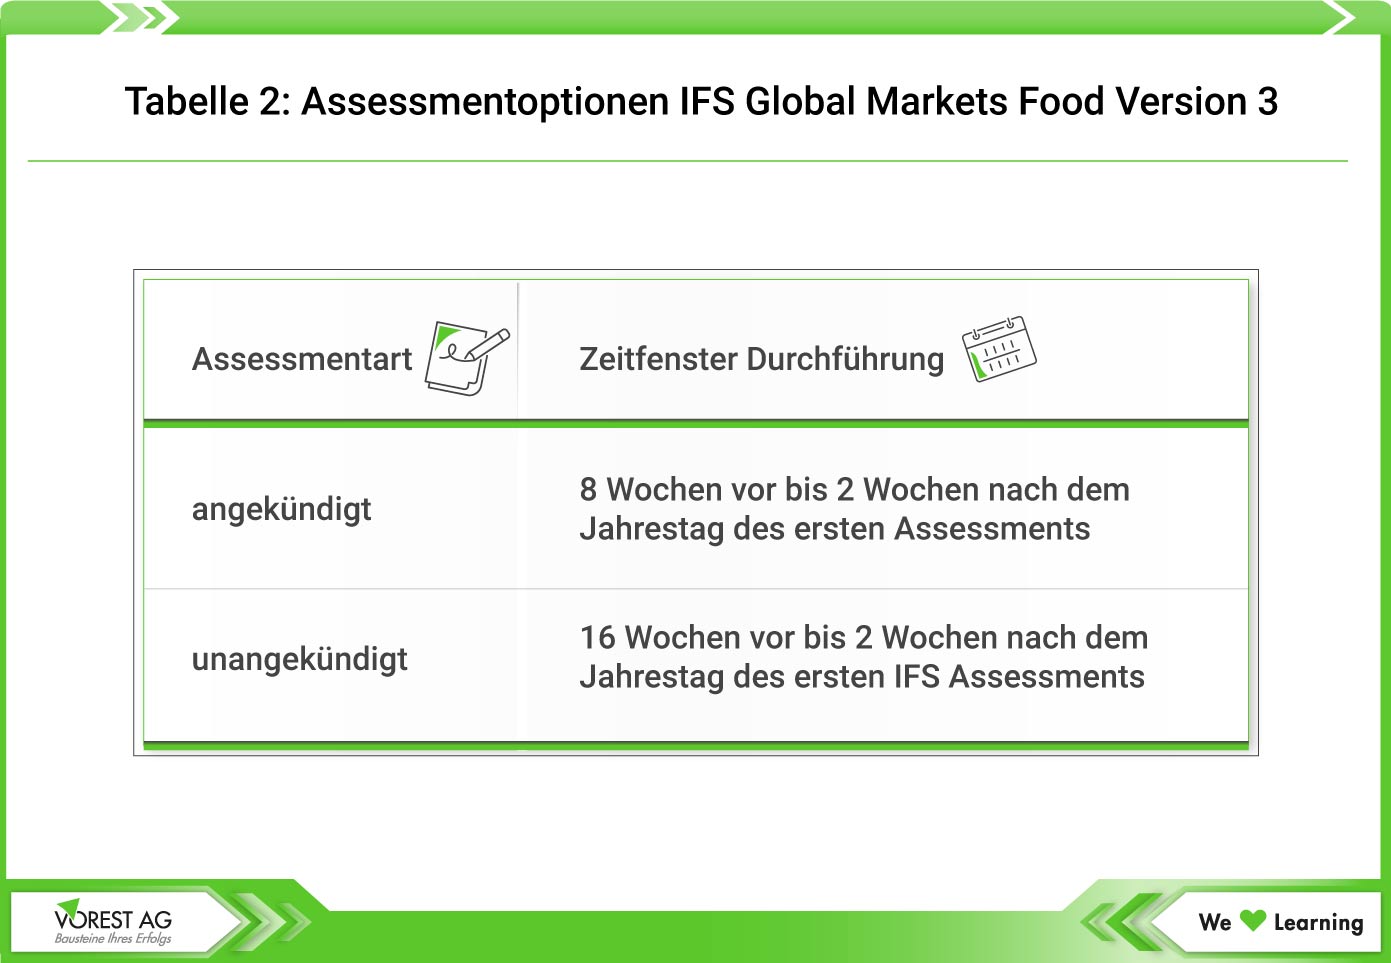 Assessmentoptionen IFS Global Markets Food Version 3